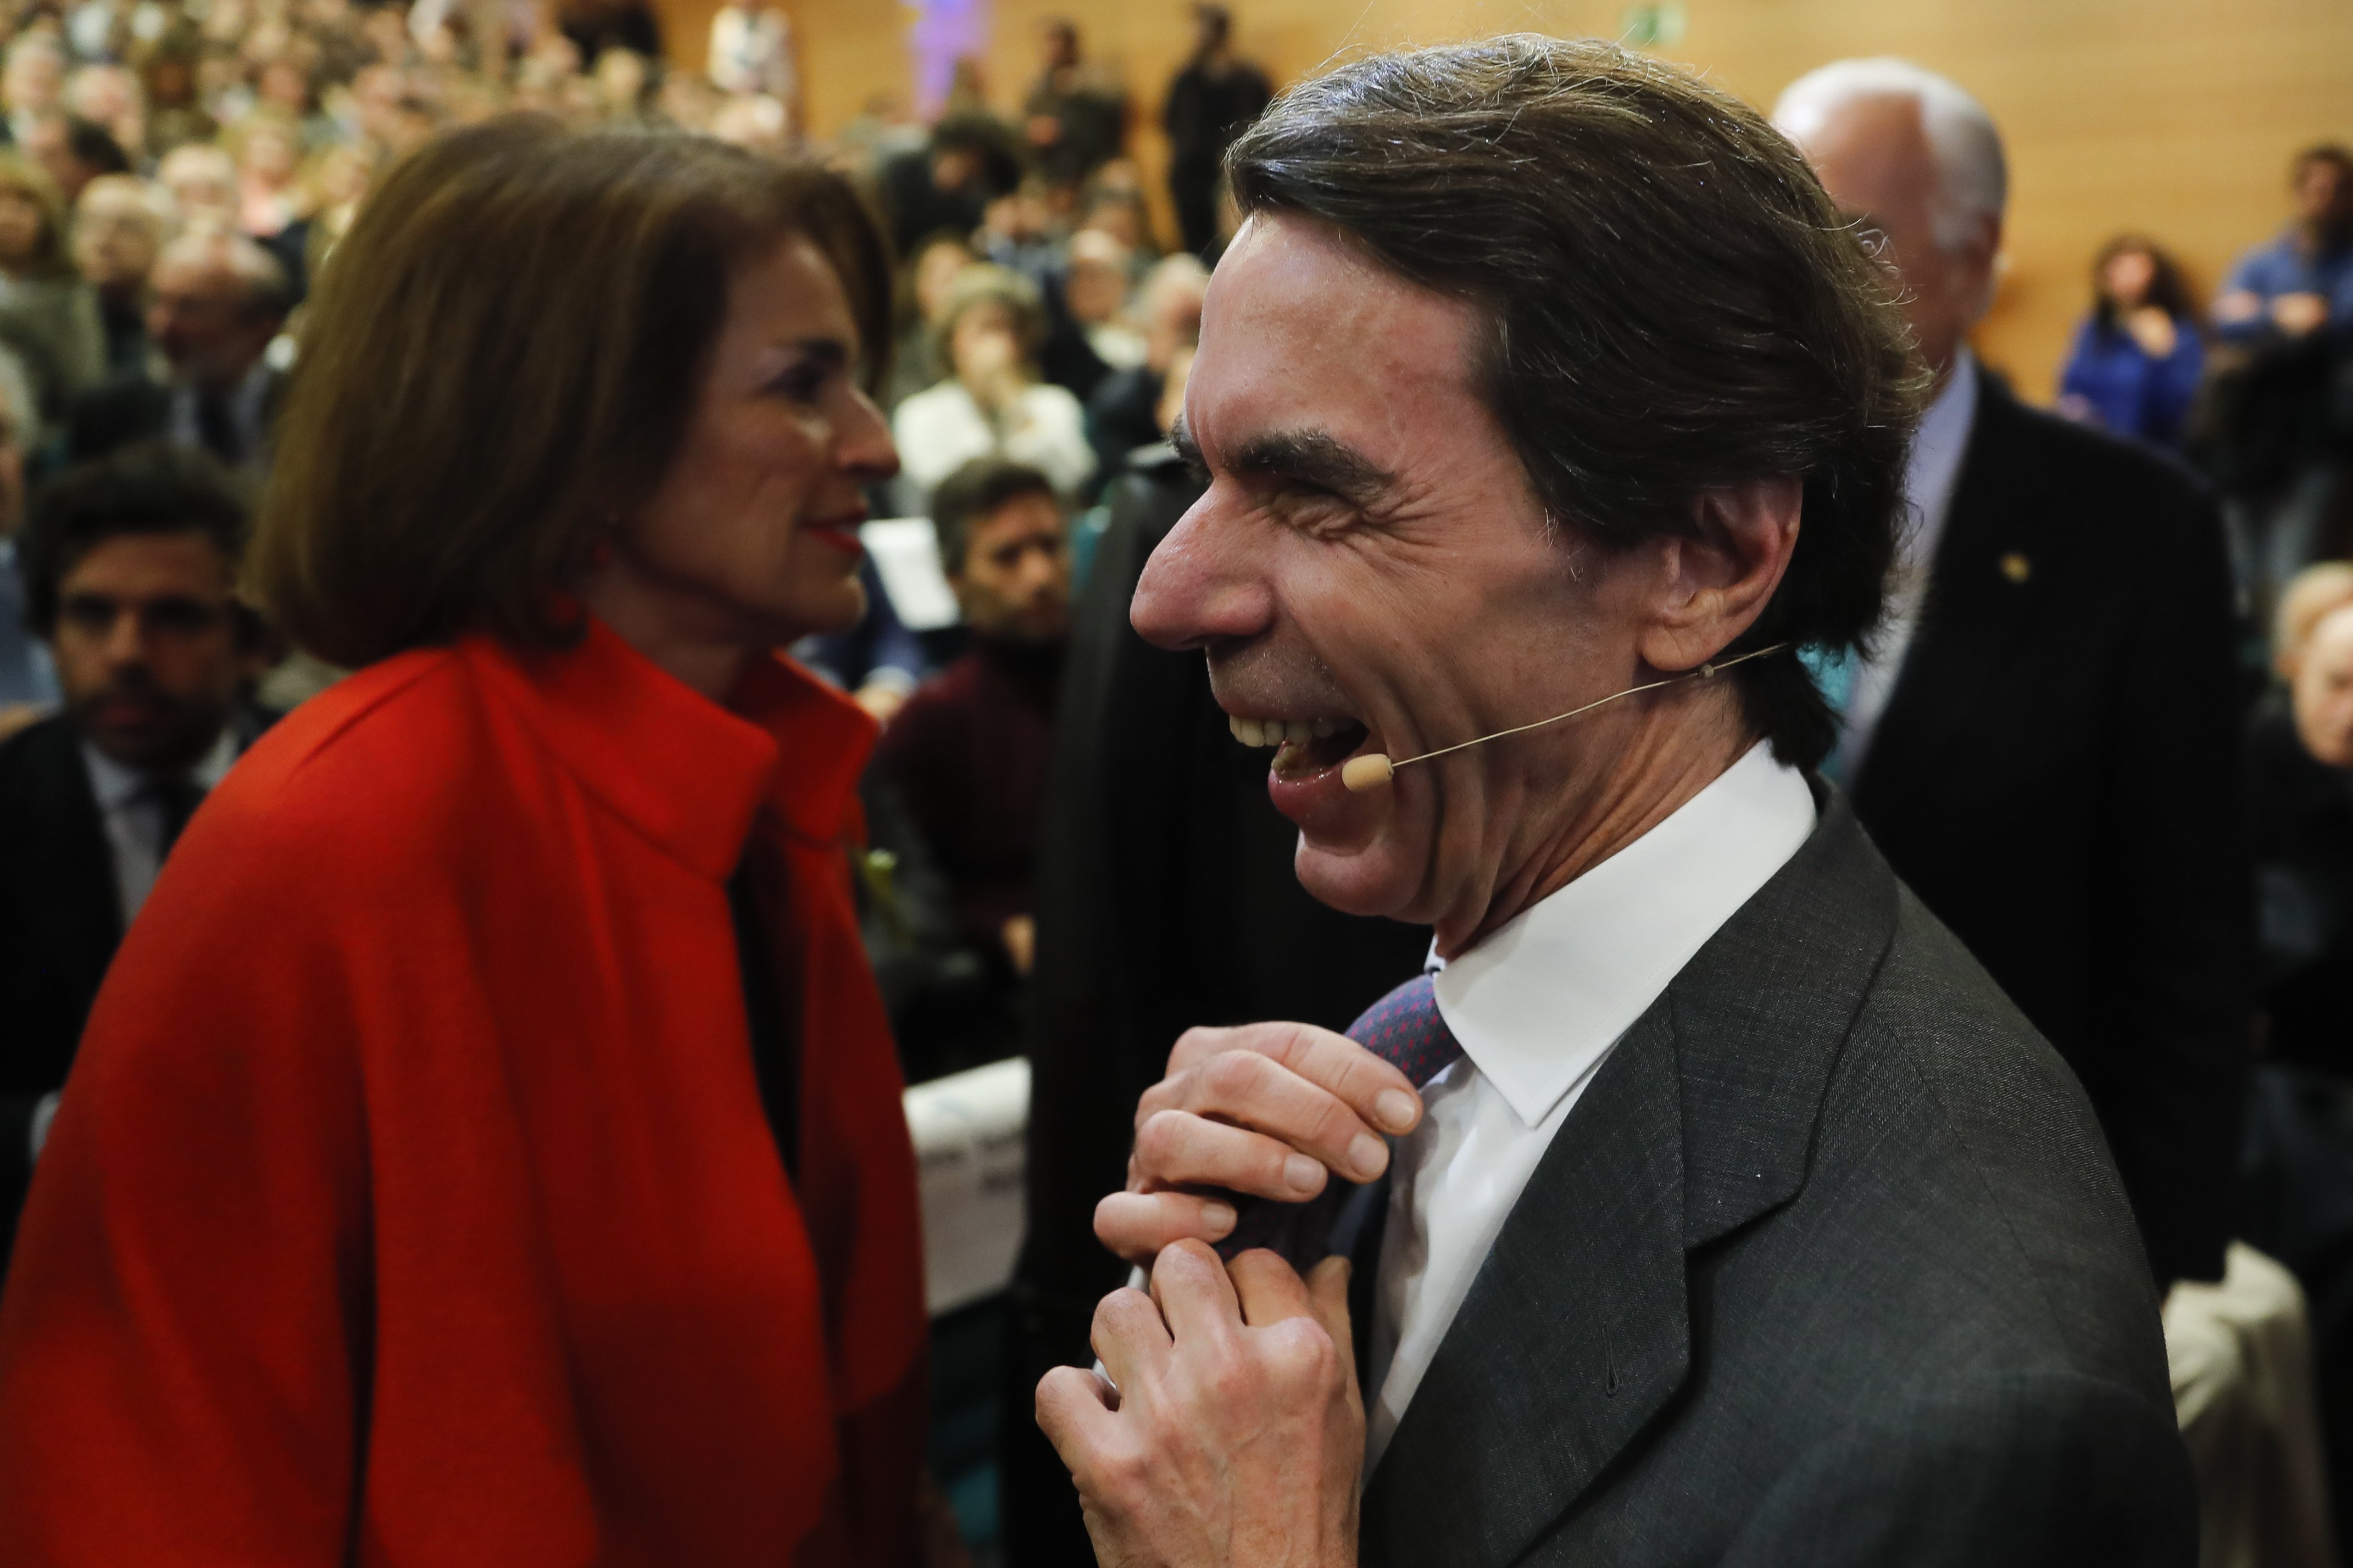 El nuevo y grotesco look de Aznar desata a la red: "¡Qué esperpento!"